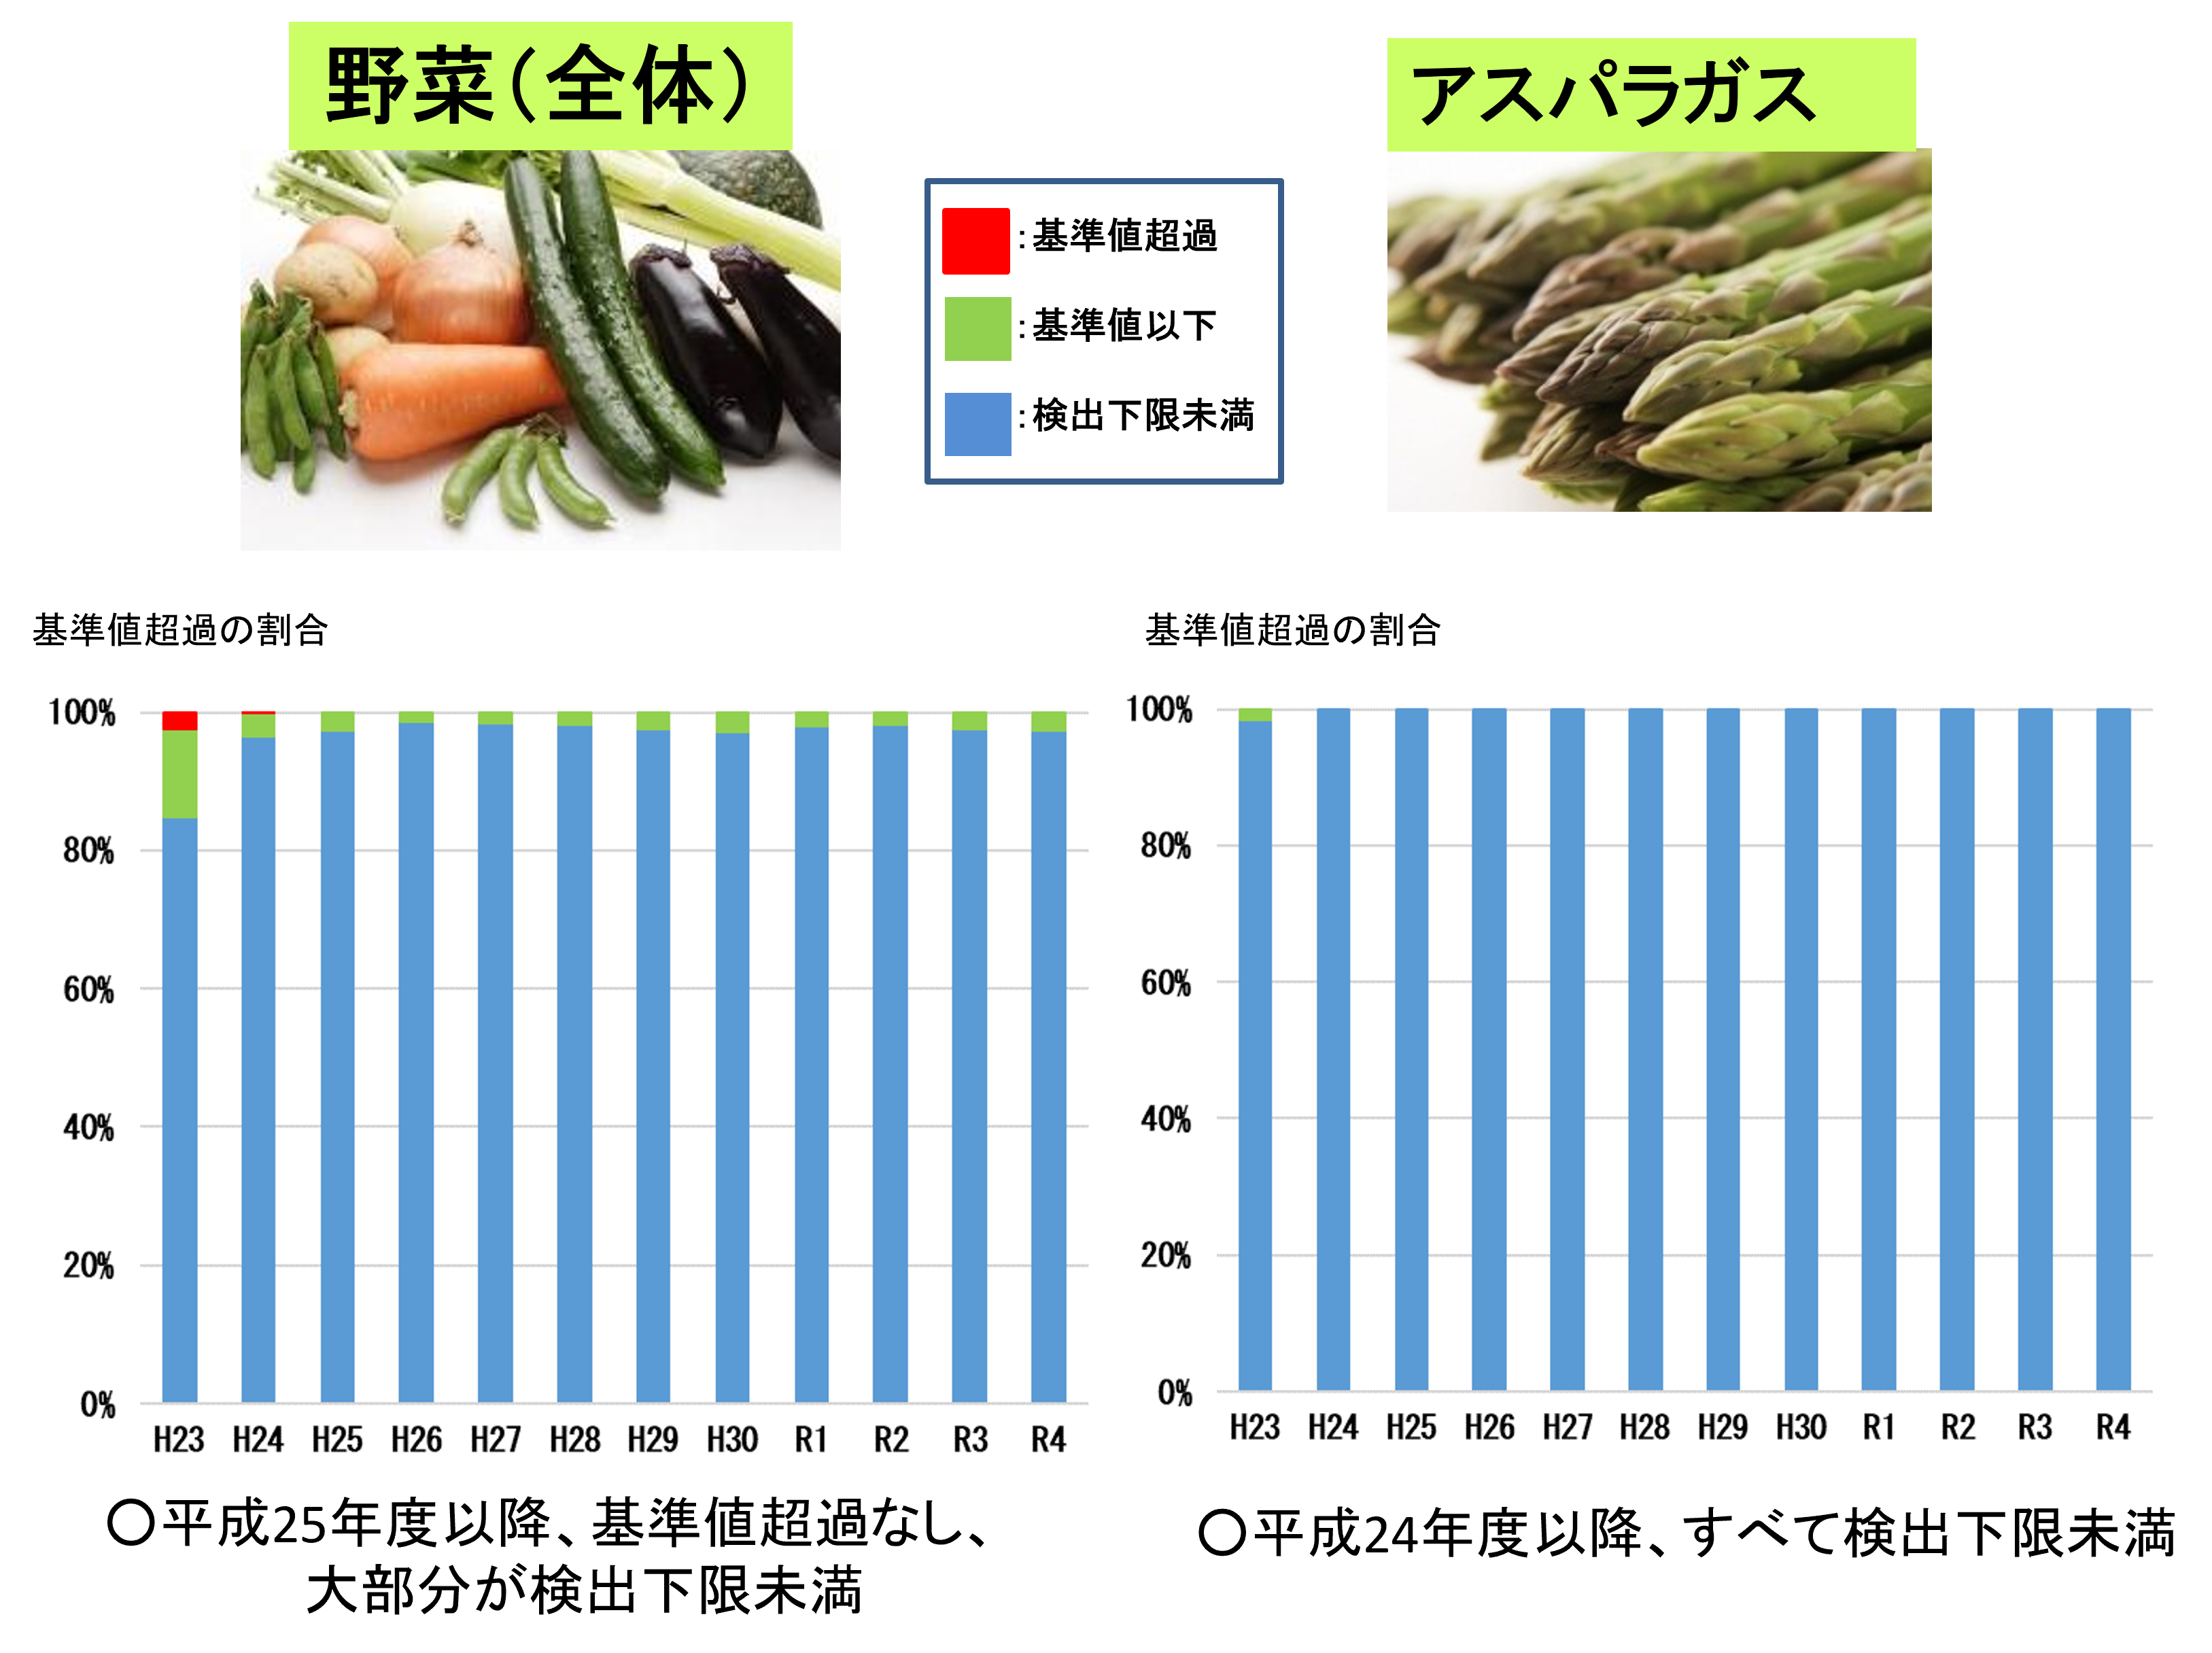 平成23年から令和4年3月までの野菜（全体・アスパラガス）の経年変化です。